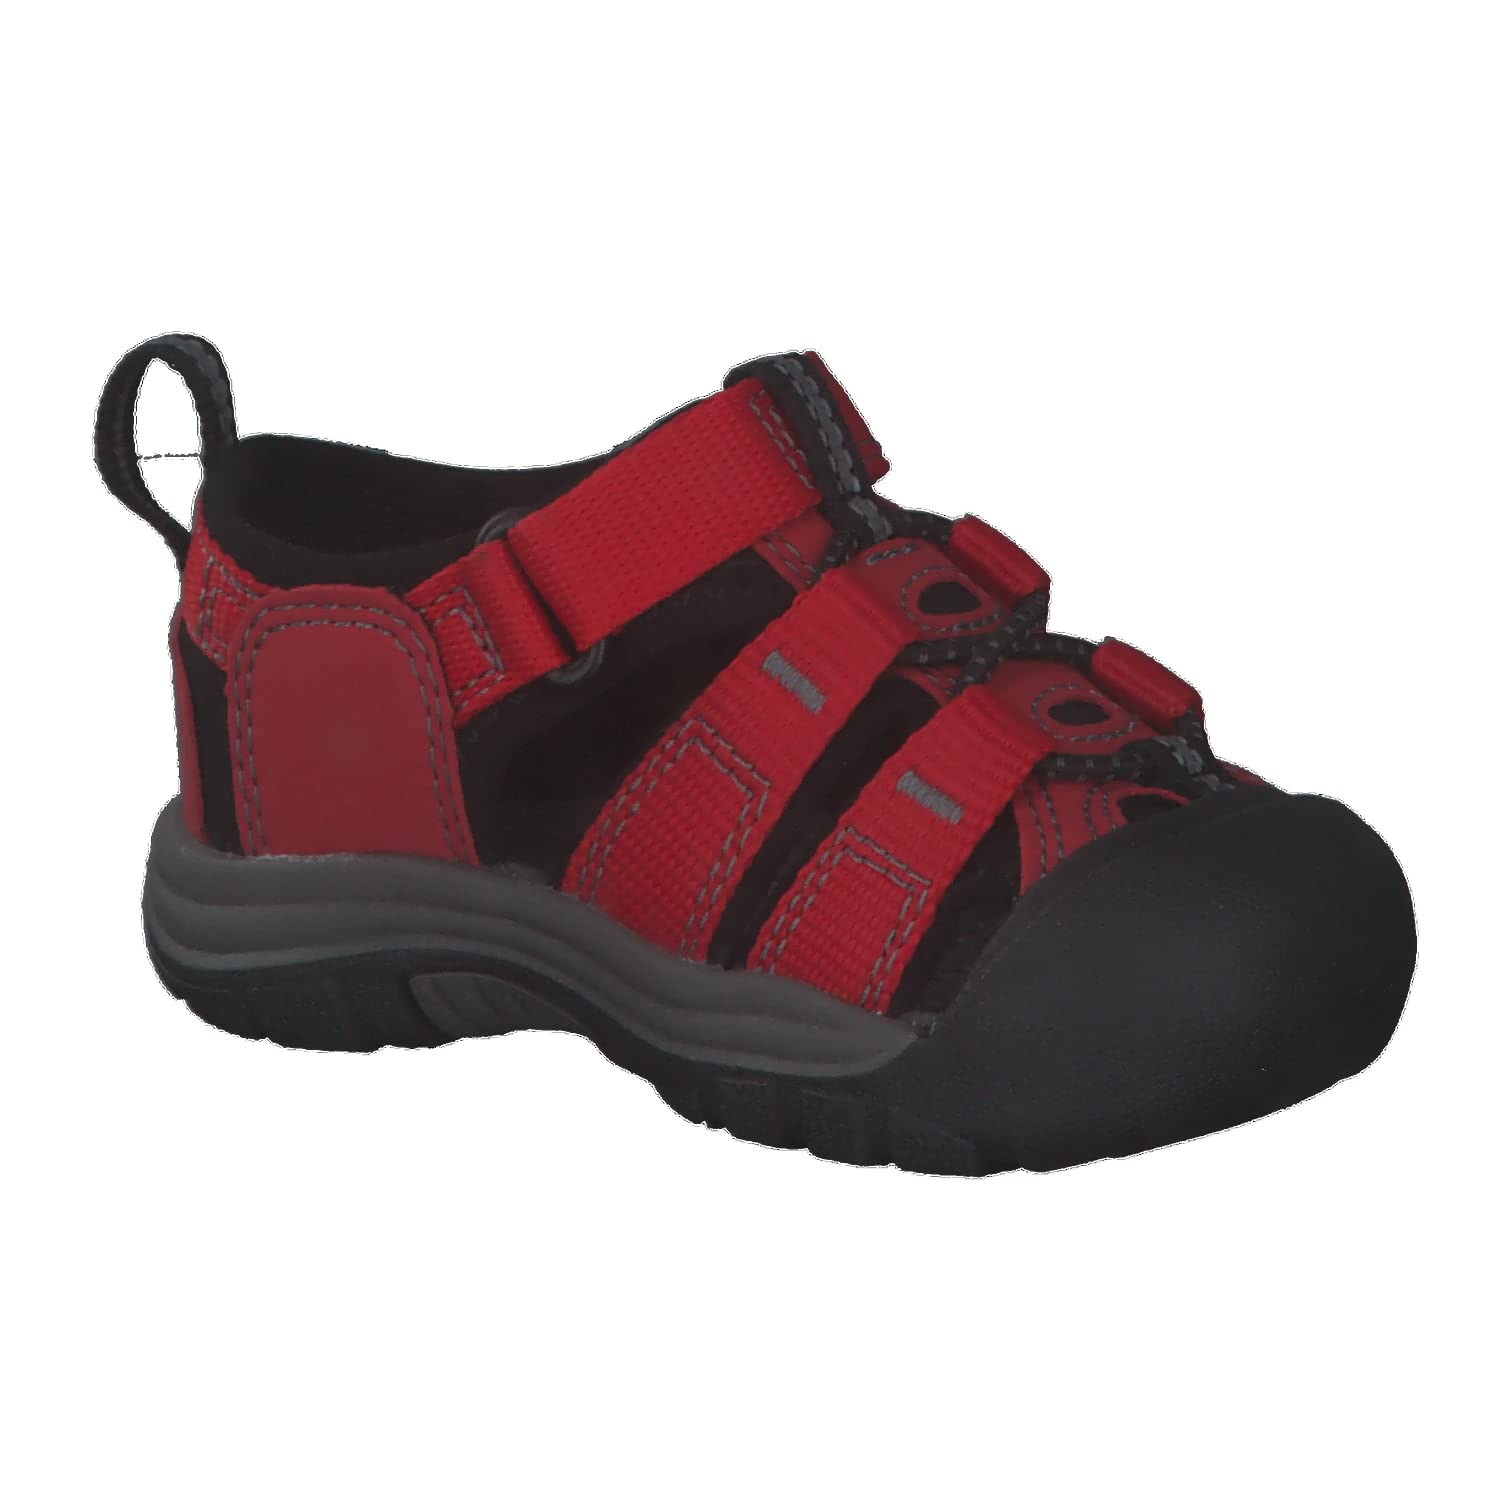 KEEN unisex child Newport H2 Sandal Water Shoe, Ribbon Red/Gargoyle, 5 Toddler US